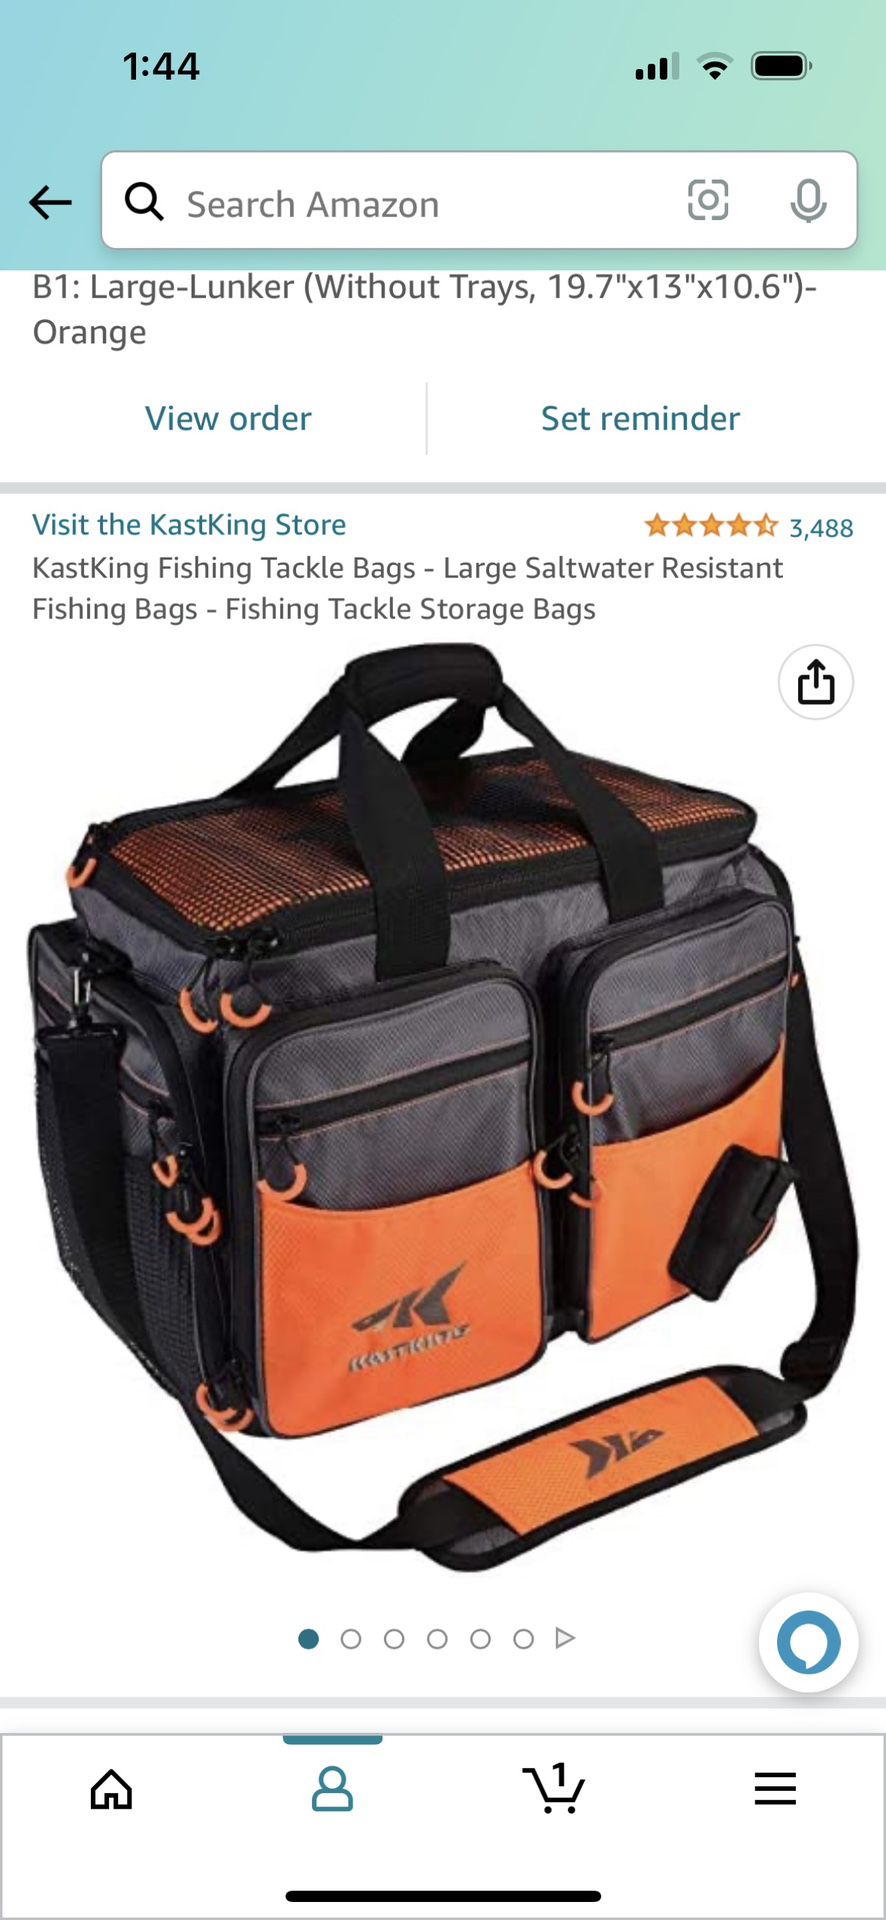 Kastking Fishing Tackle Bags - Large Saltwater Resistant Fishing